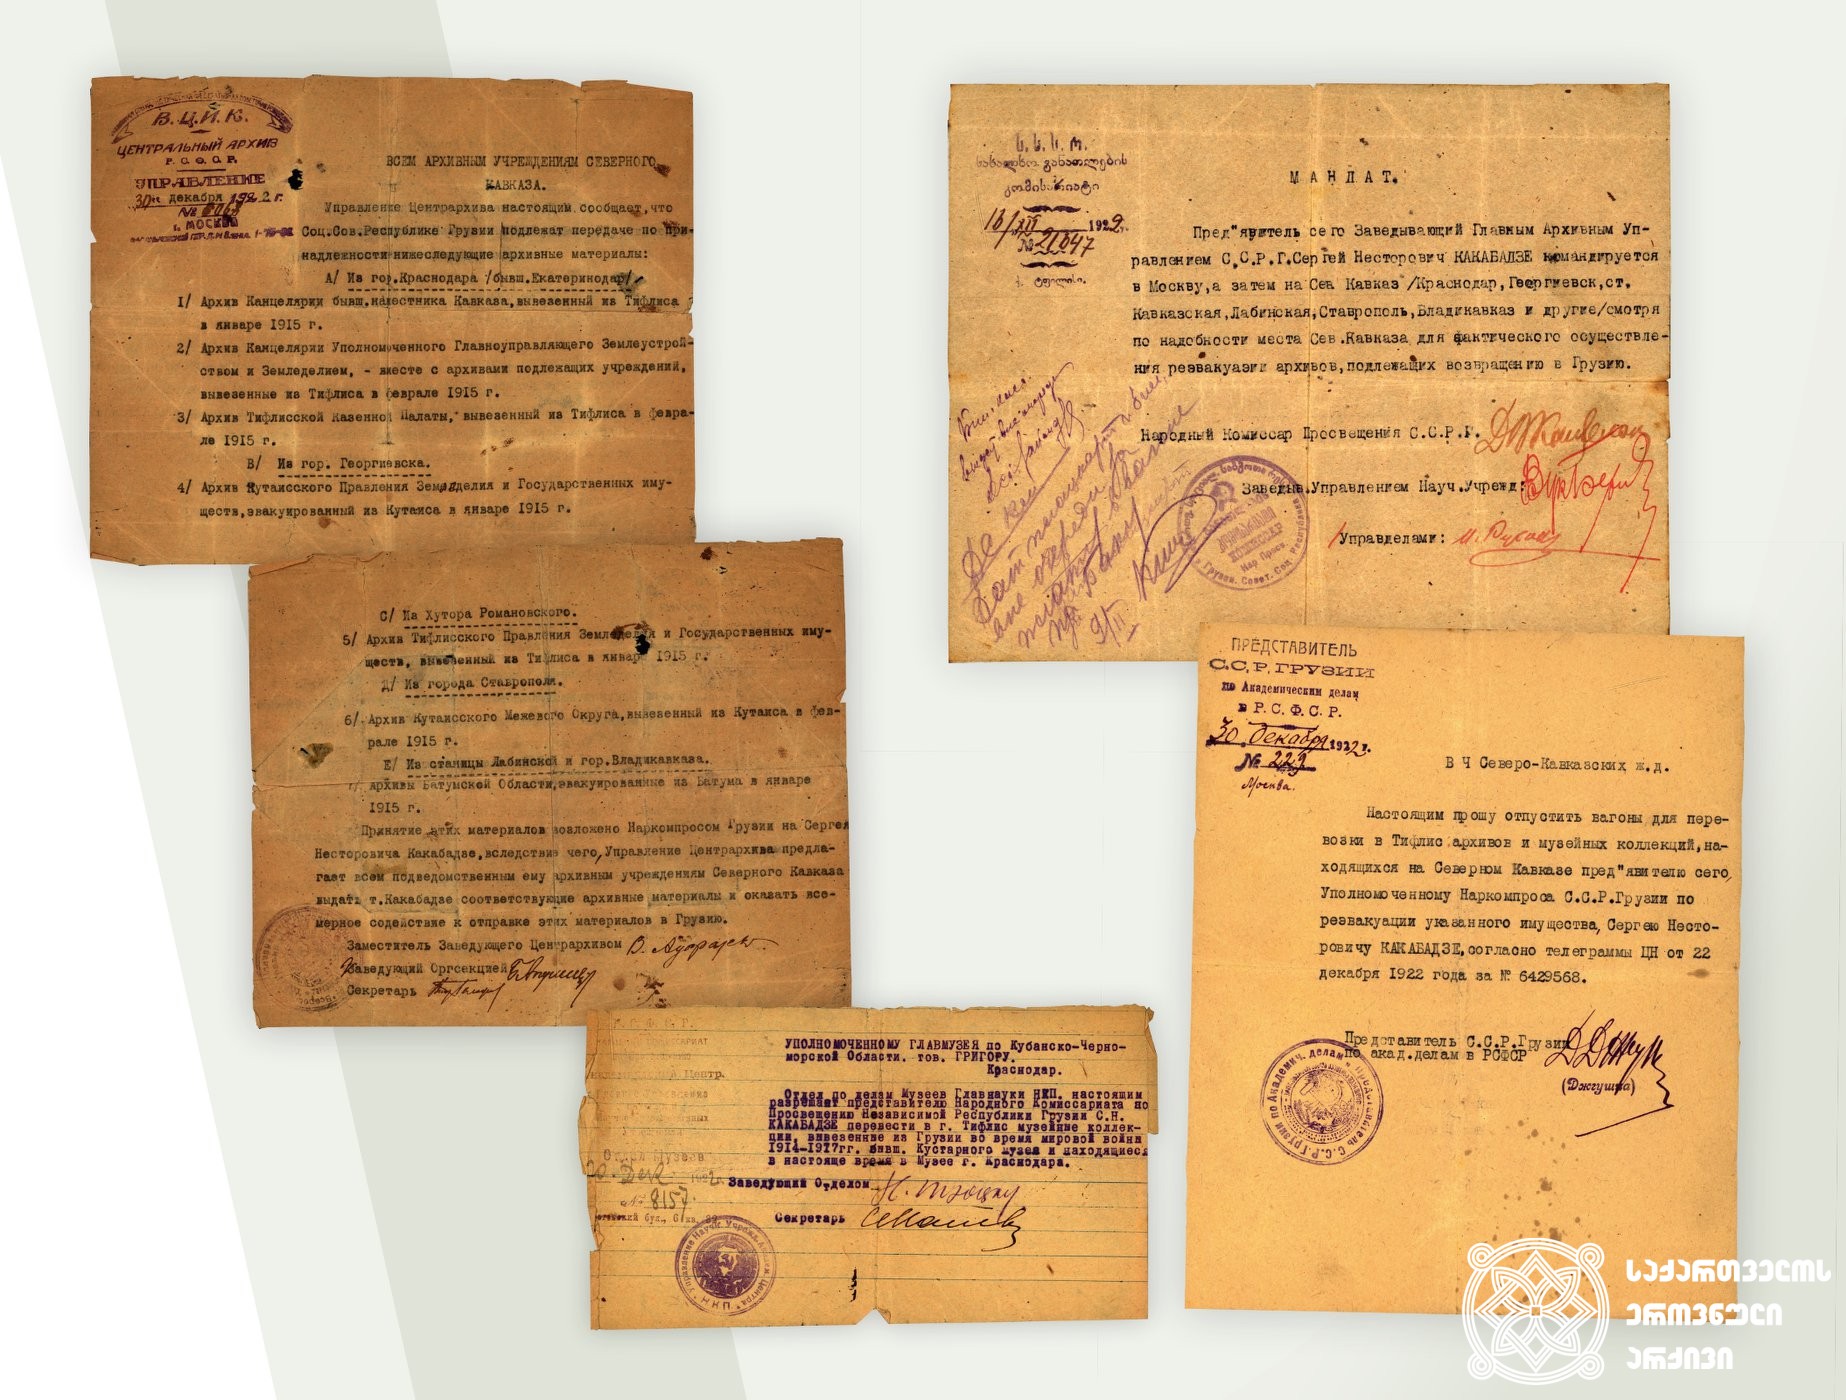 დოკუმენტები საქართველოდან 1915 წელს ჩრდილოეთ კავკასიაში გატანილი საარქივო ფონდების დაბრუნების შესახებ. 1922 წელი
<br>  სარგის კაკაბაძის საოჯახო არქივიდან
<br> 
Documents about the archival fonds taken to North Caucasus in 1915; 1922
<br>  From Sargis Kakabadze’s family archive